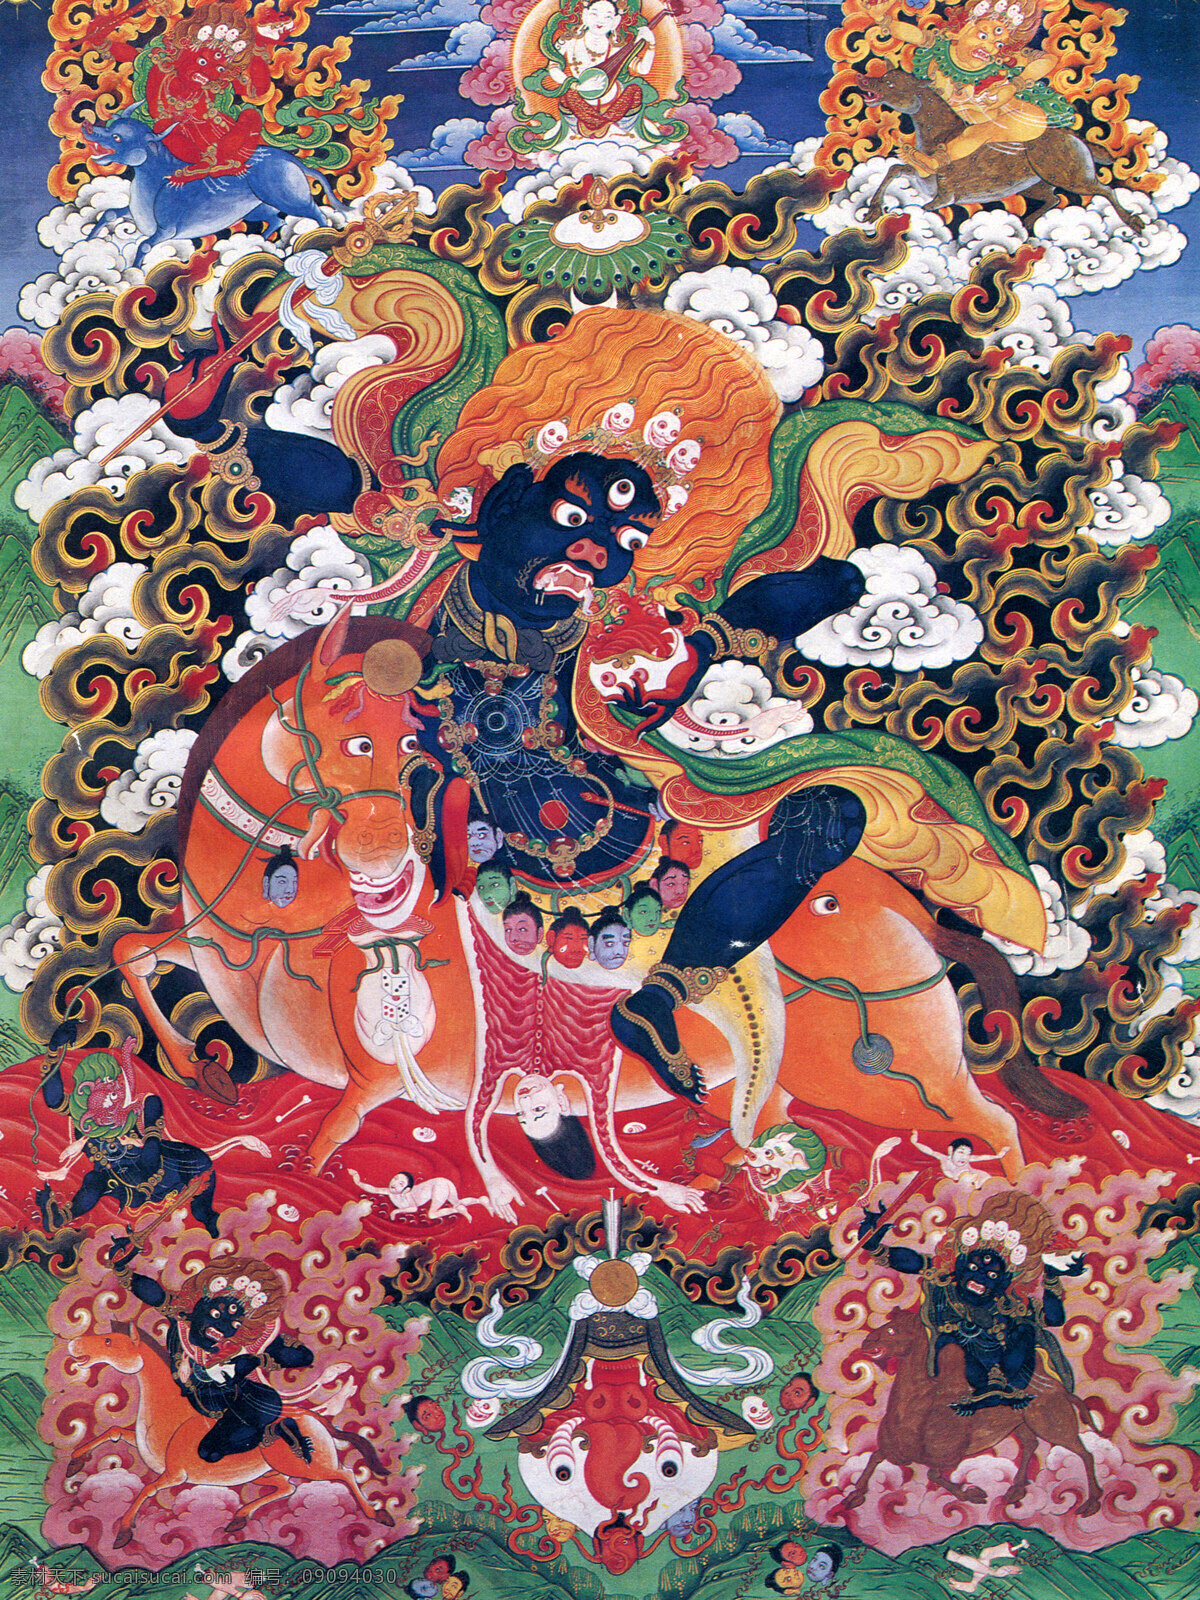 佛教 佛经 唐卡 文化艺术 西藏 宗教信仰 日喀则 佛法 佛龛 唐卡全大 藏族文化01 藏族文化